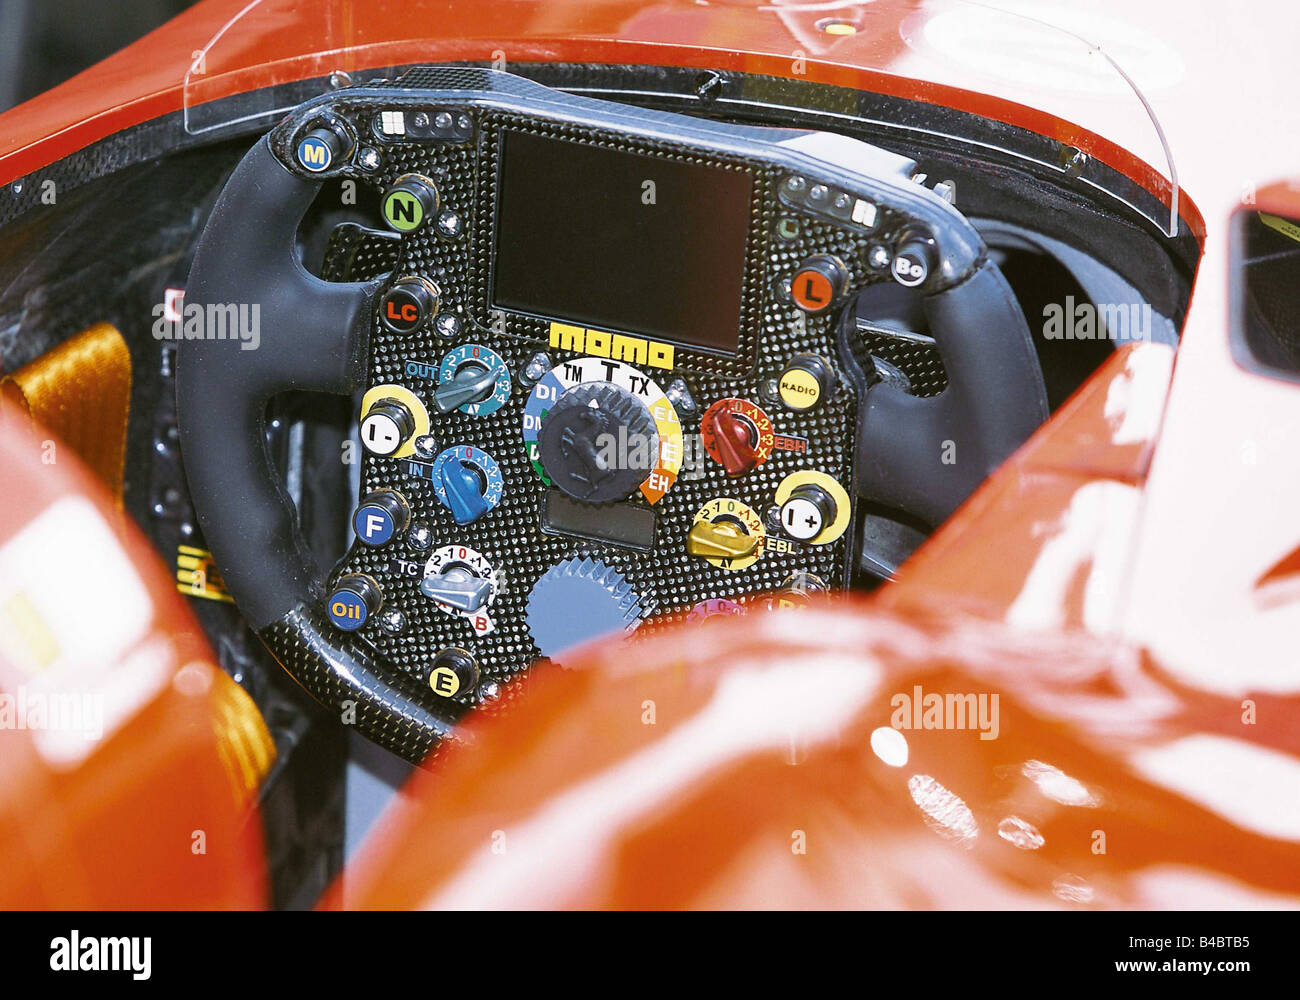 Car, Formel 1 steering wheel Ferrari, F2002, Cockpit, Season 2002, ams 22/2002, Seite 234, technique/accessory, accessories Stock Photo